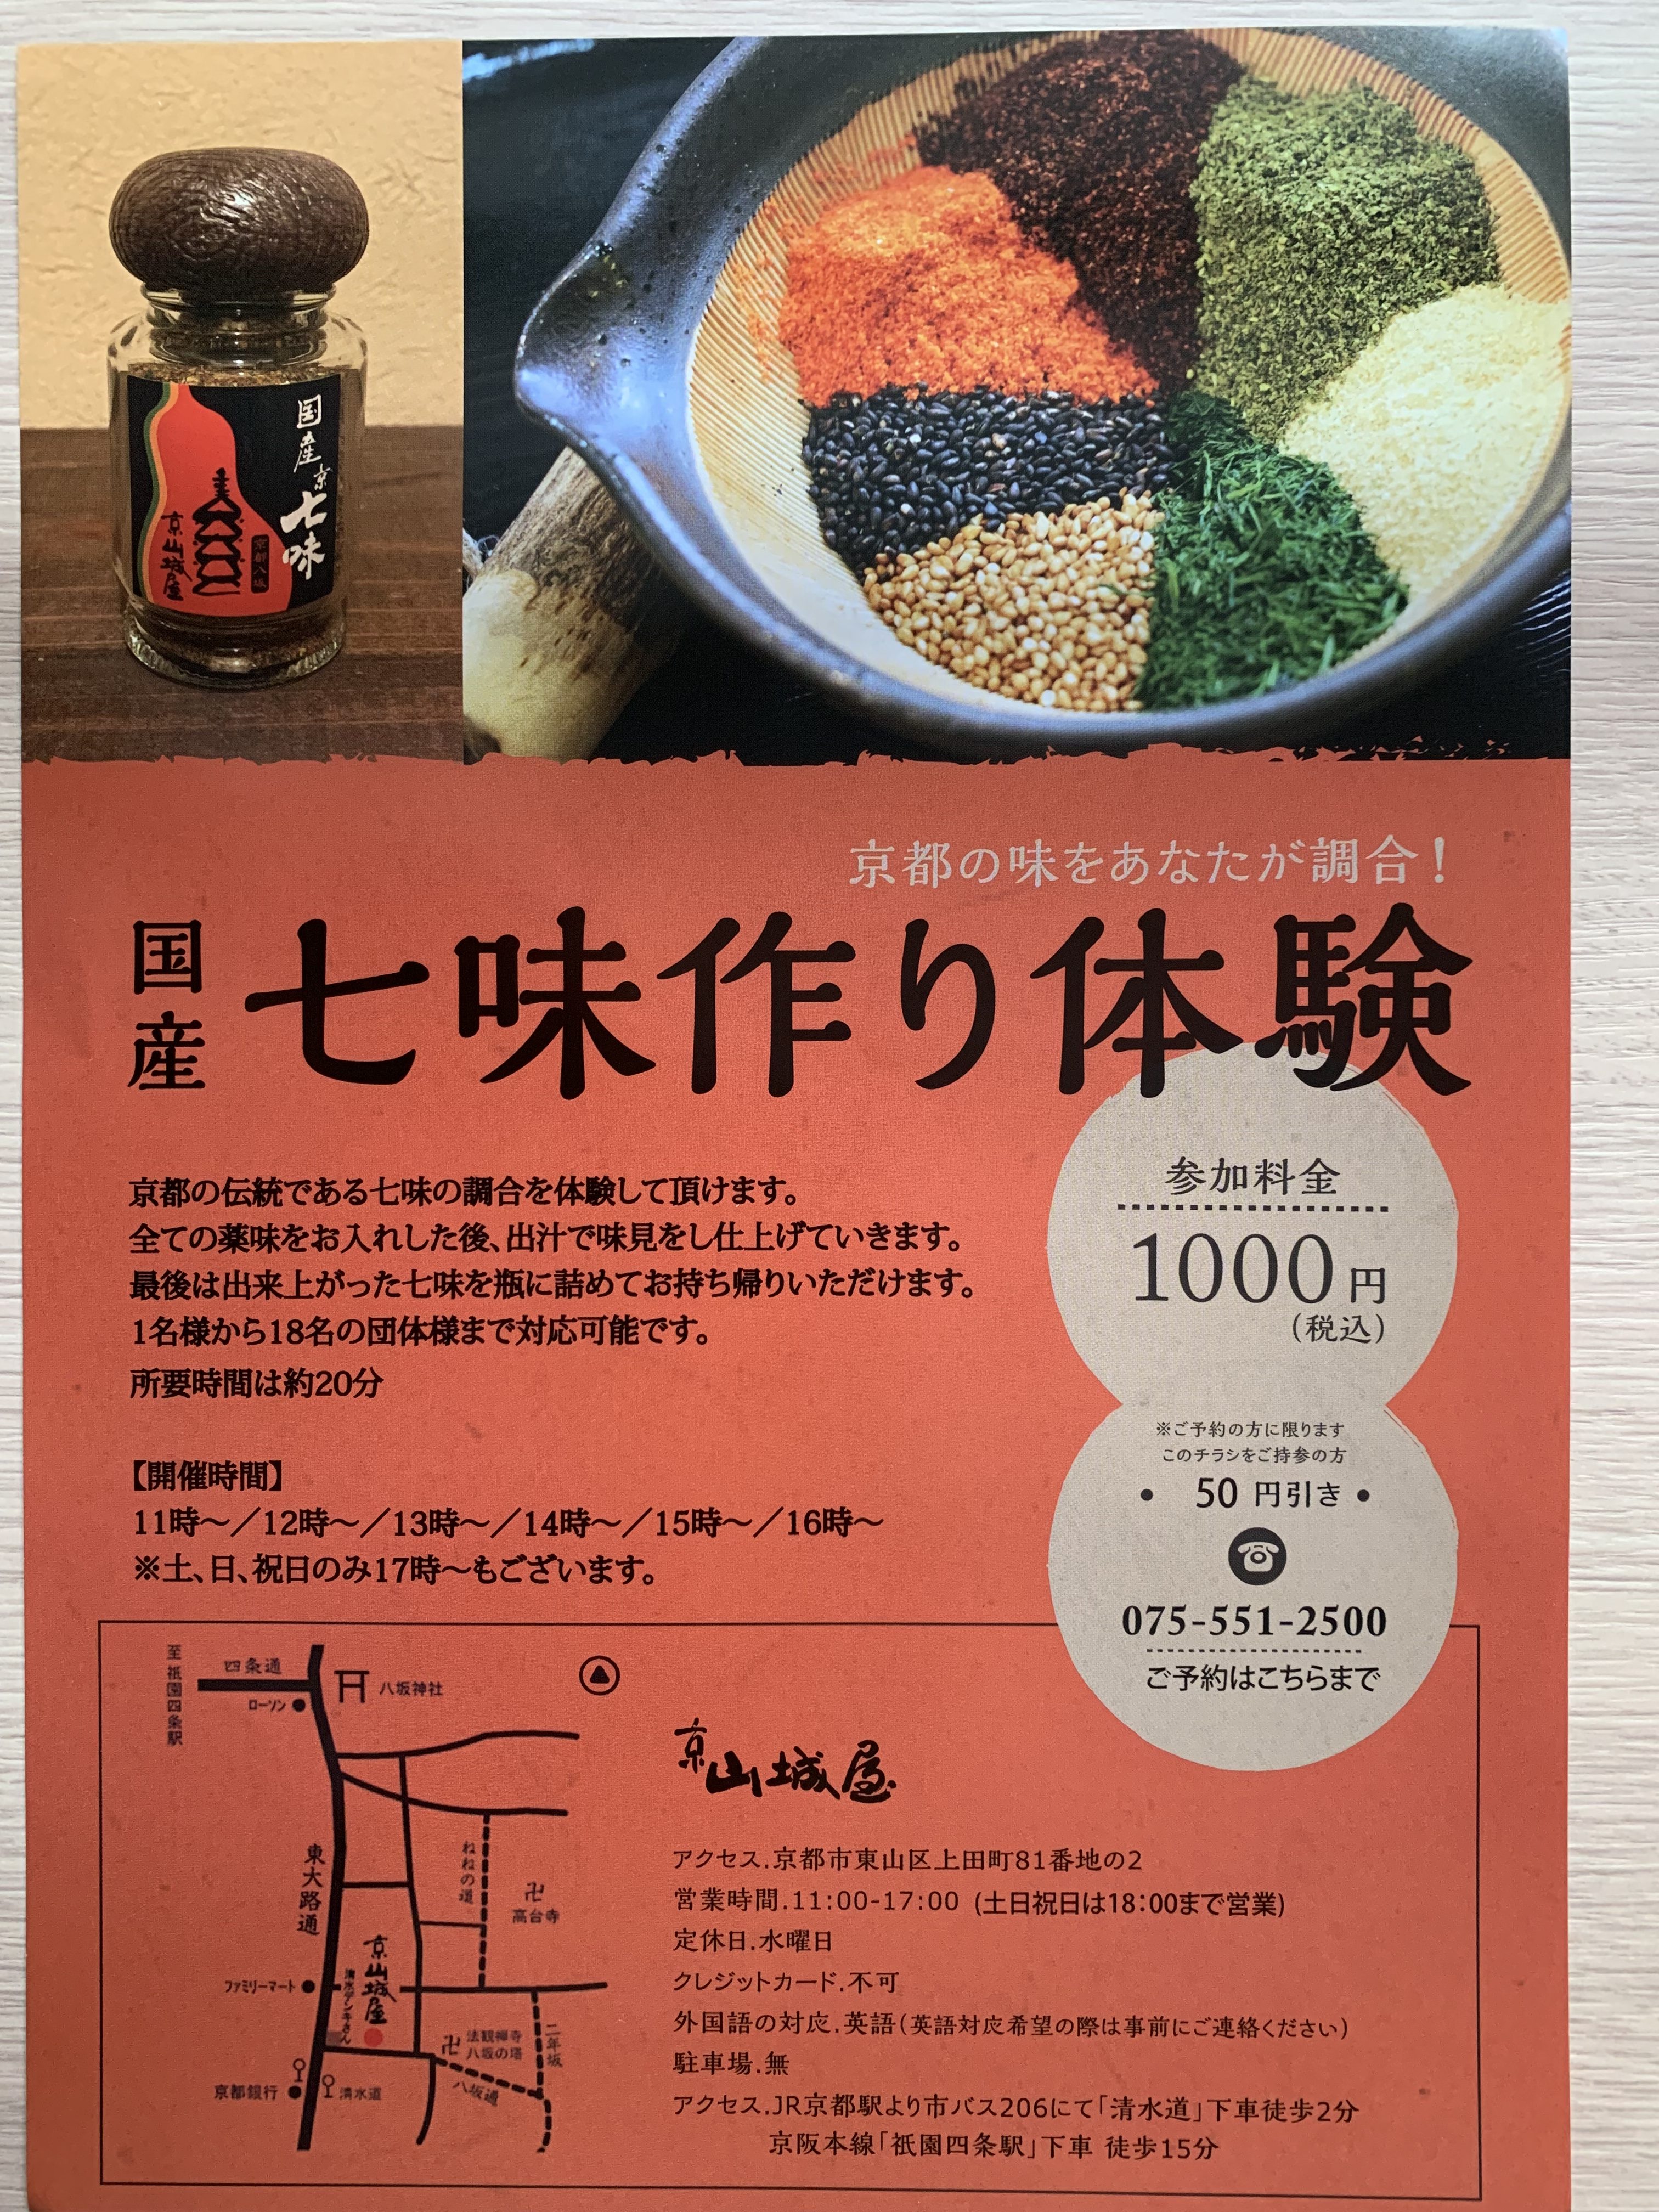 京都の老舗で自分で作るマイ七味作り体験をしてみよう！